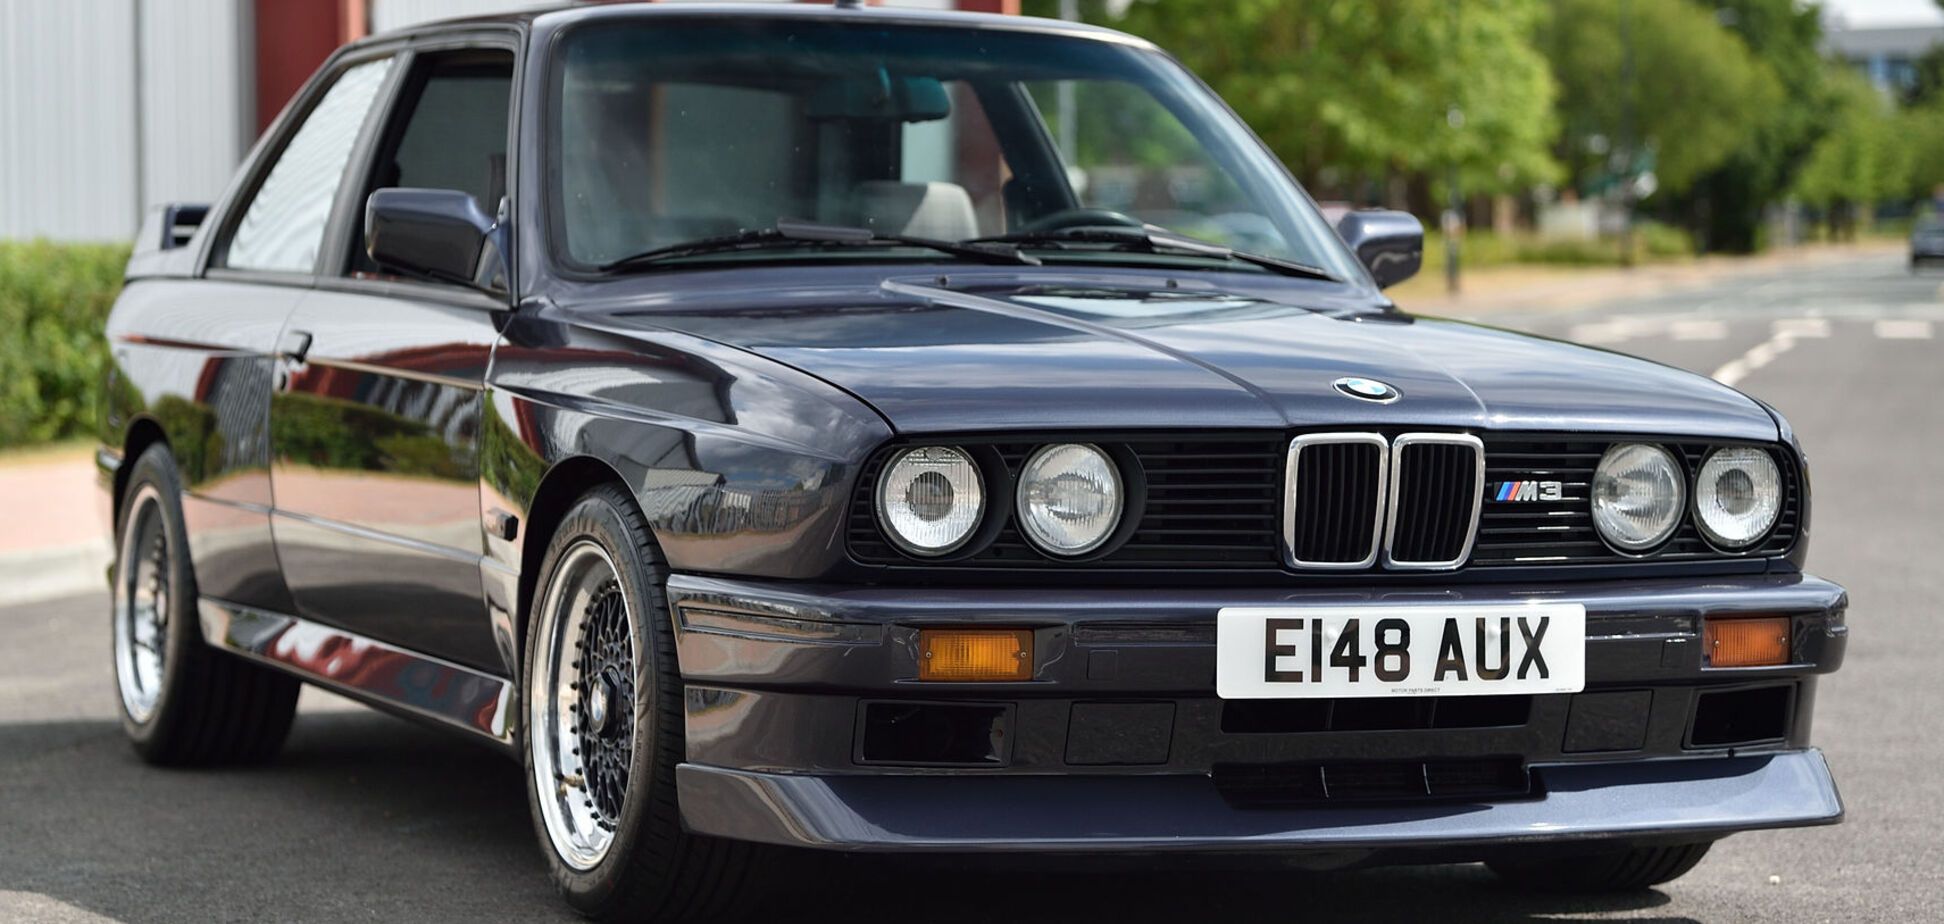 BMW M3 Evolution II, которой исполнилось 32 года, готовы продать за любую сумму. Фото: themarket.co.uk